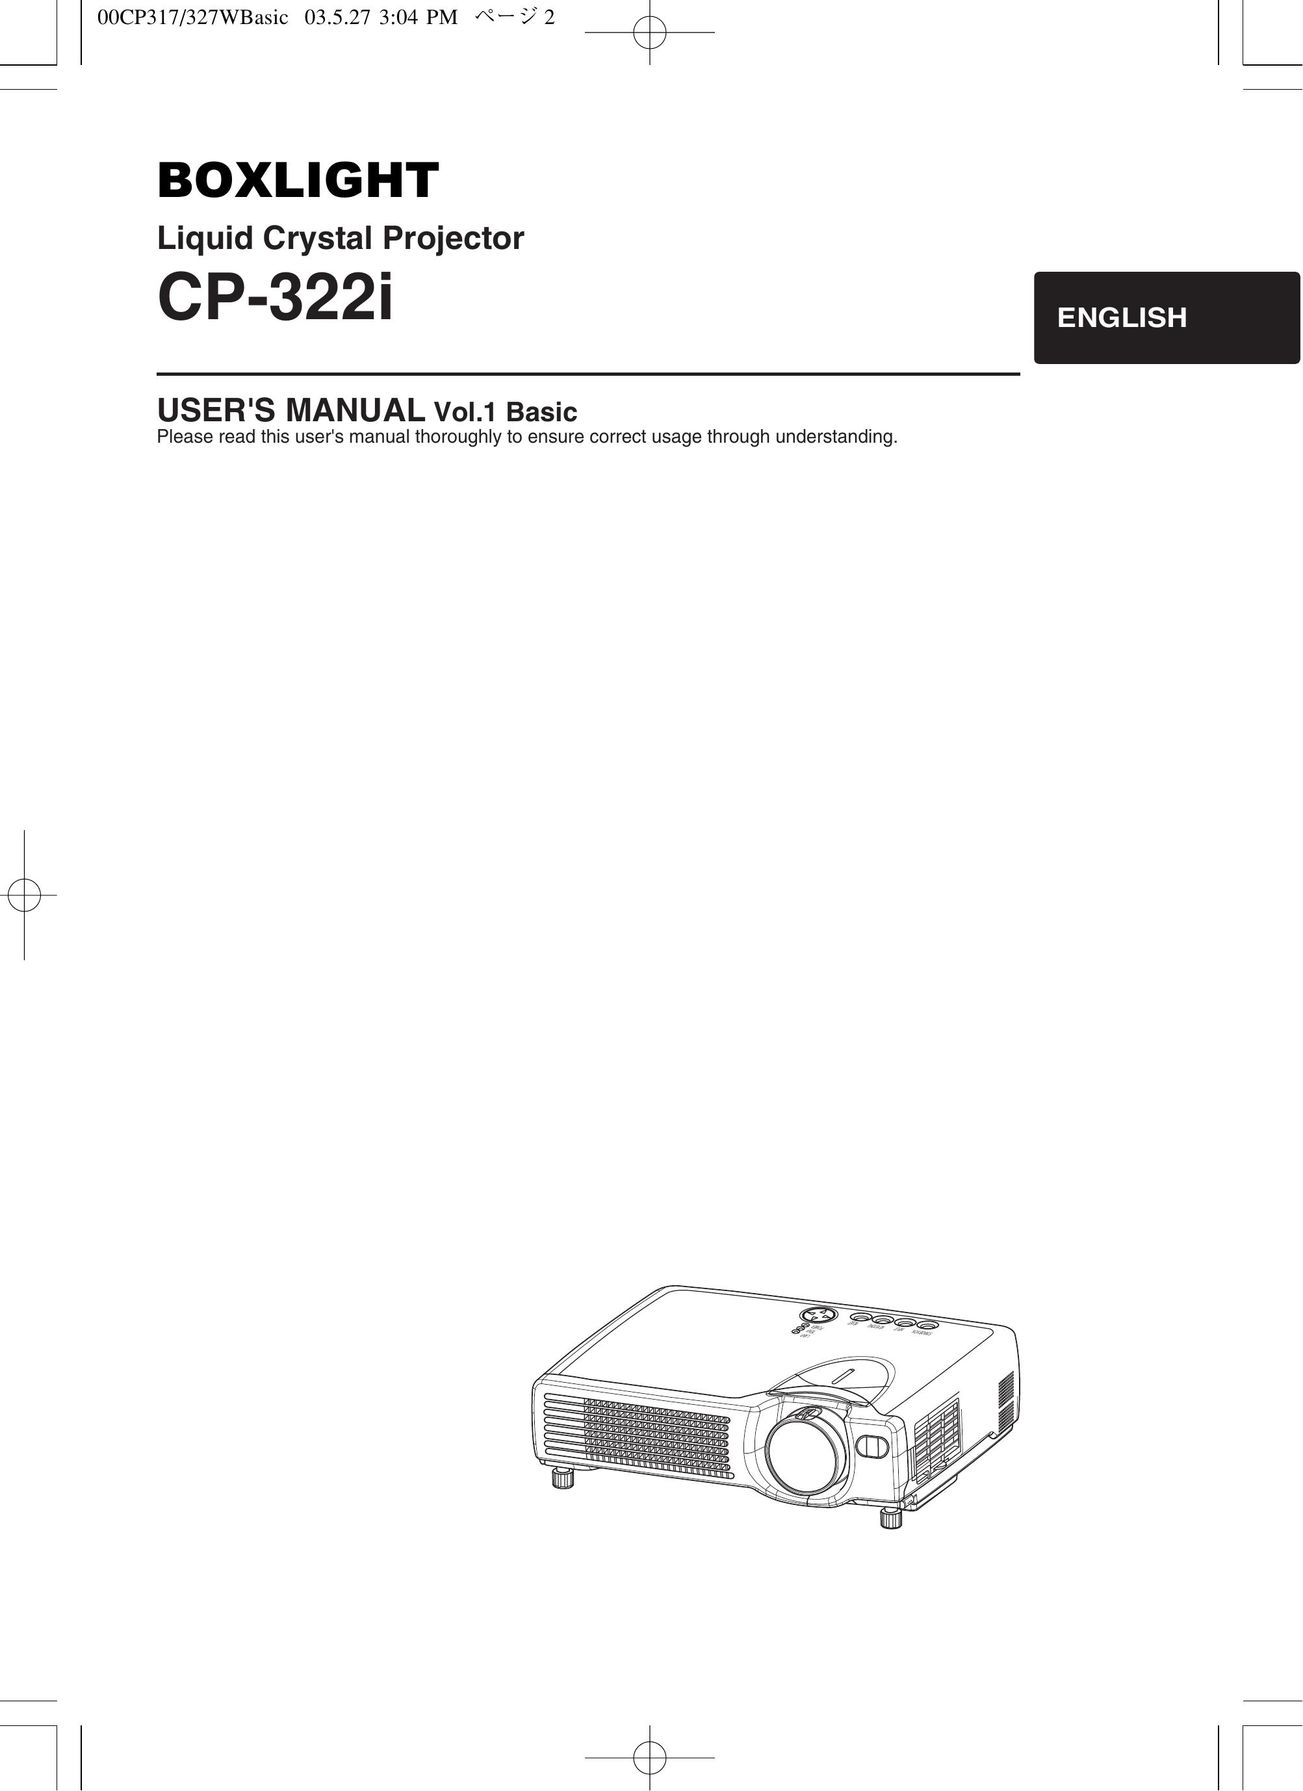 BOXLIGHT CP-322I Projector User Manual